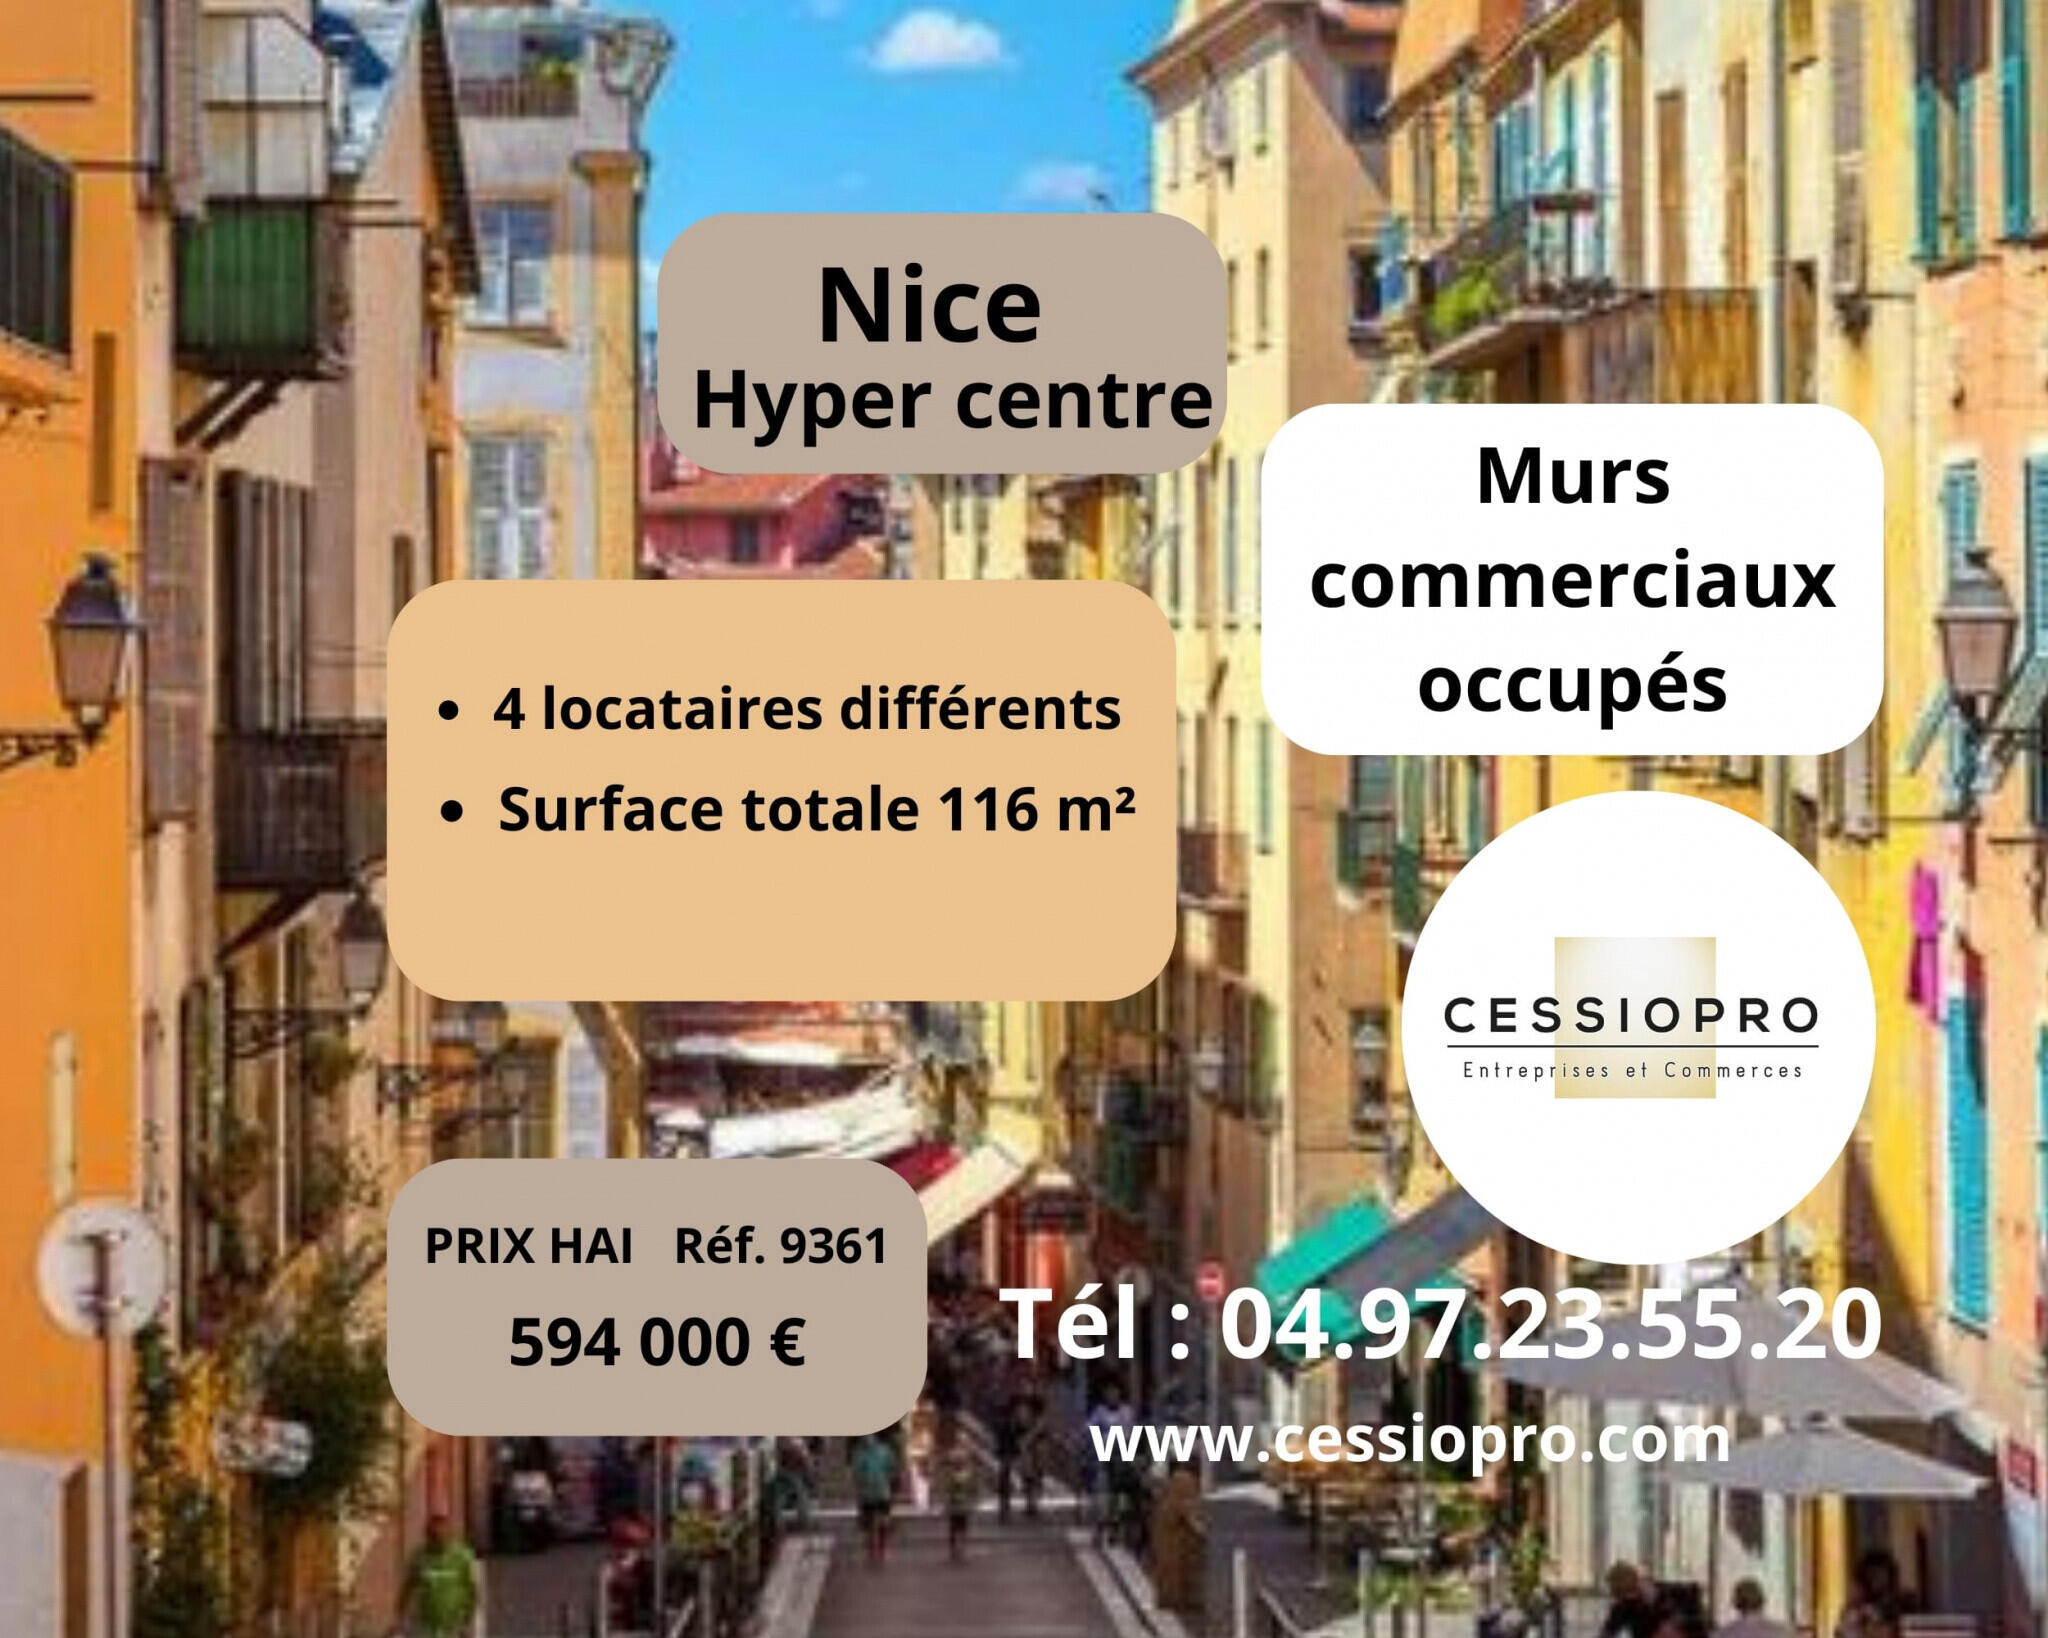 A vendre murs occupés de 116m² à Nice hyper centre